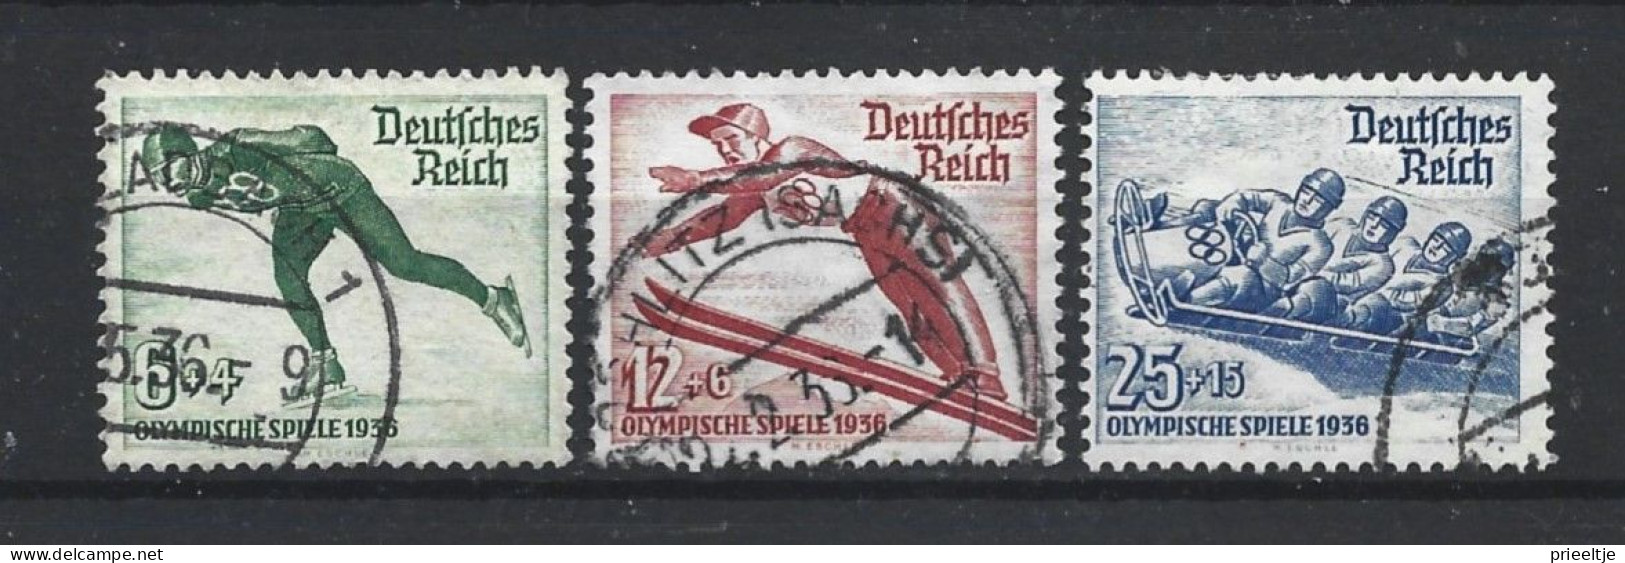 Deutsches Reich 1935 Ol. Winter Games 1936 Y.T. 559/561 (0) - Oblitérés